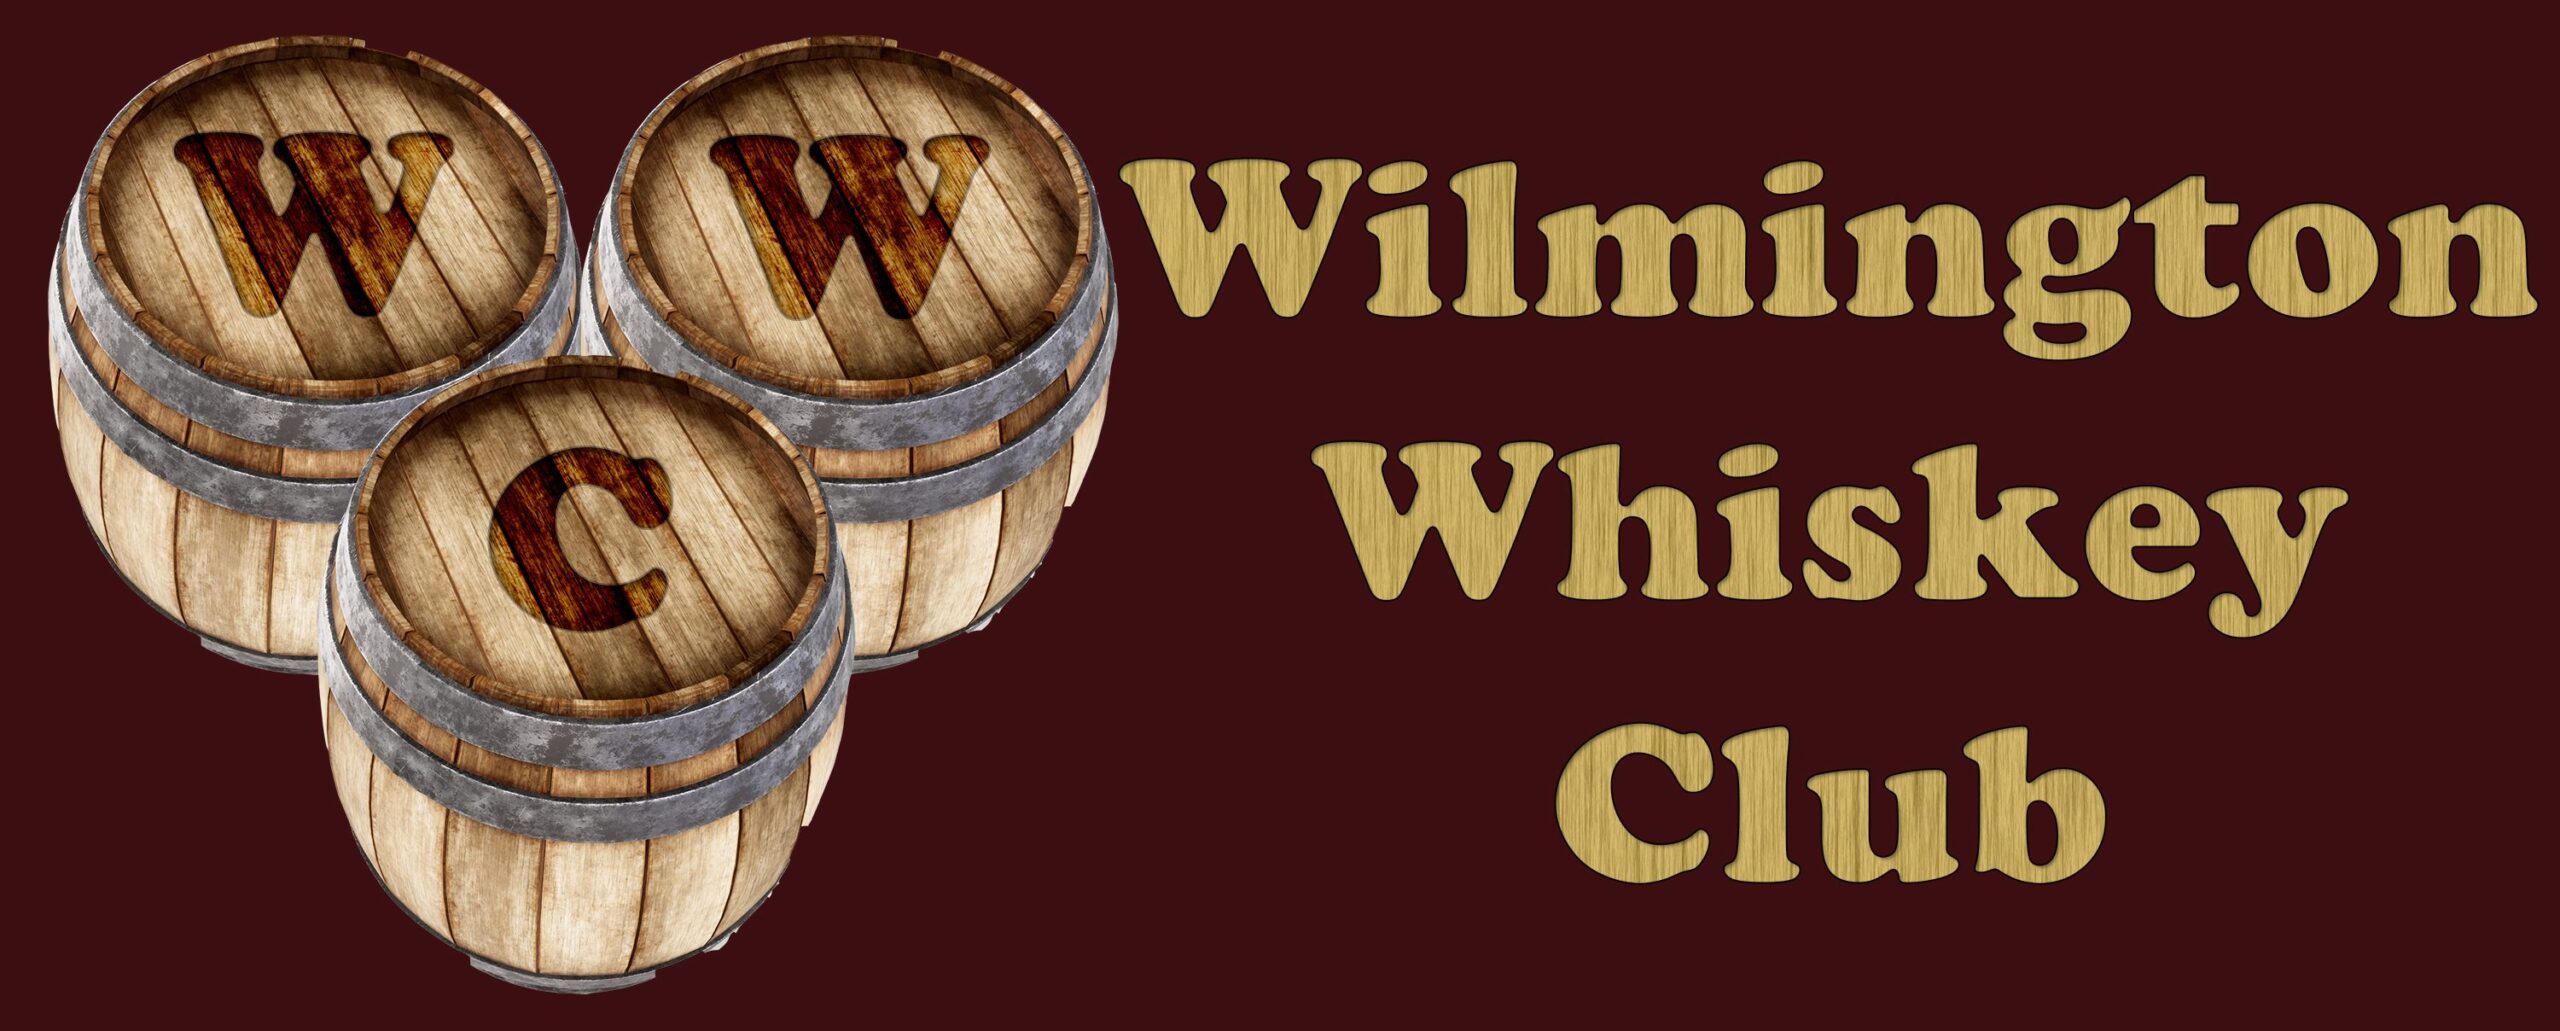 wilmington whiskey club logo